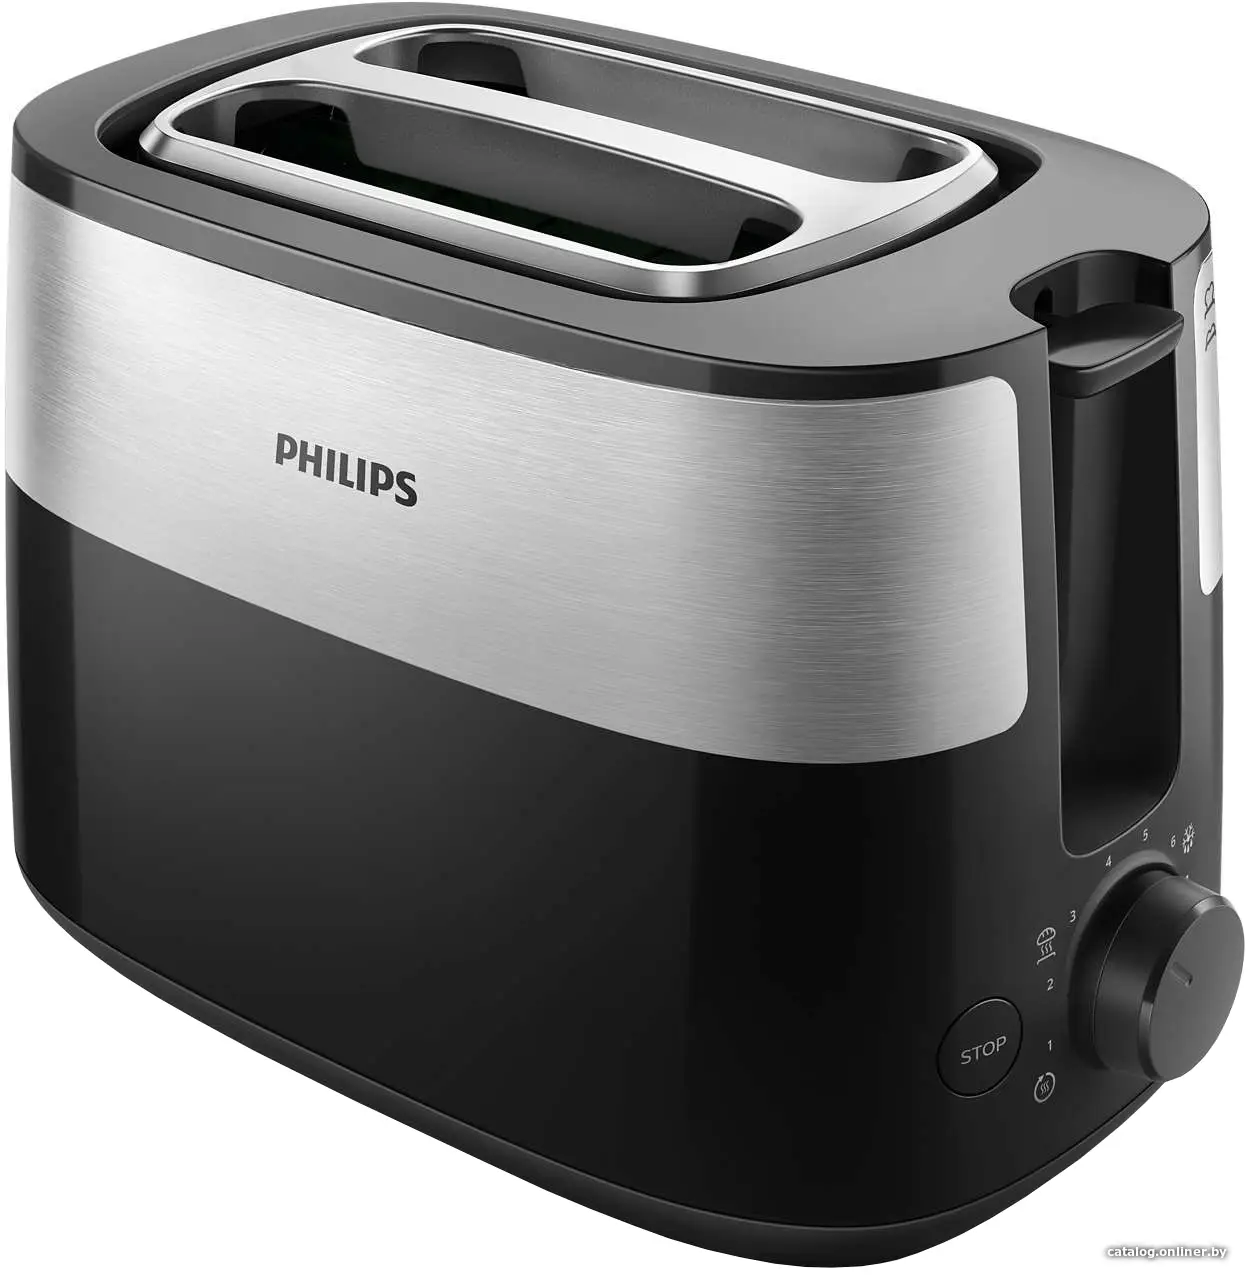 Купить Тостер Philips HD2516 черный/стальной, цена, опт и розница